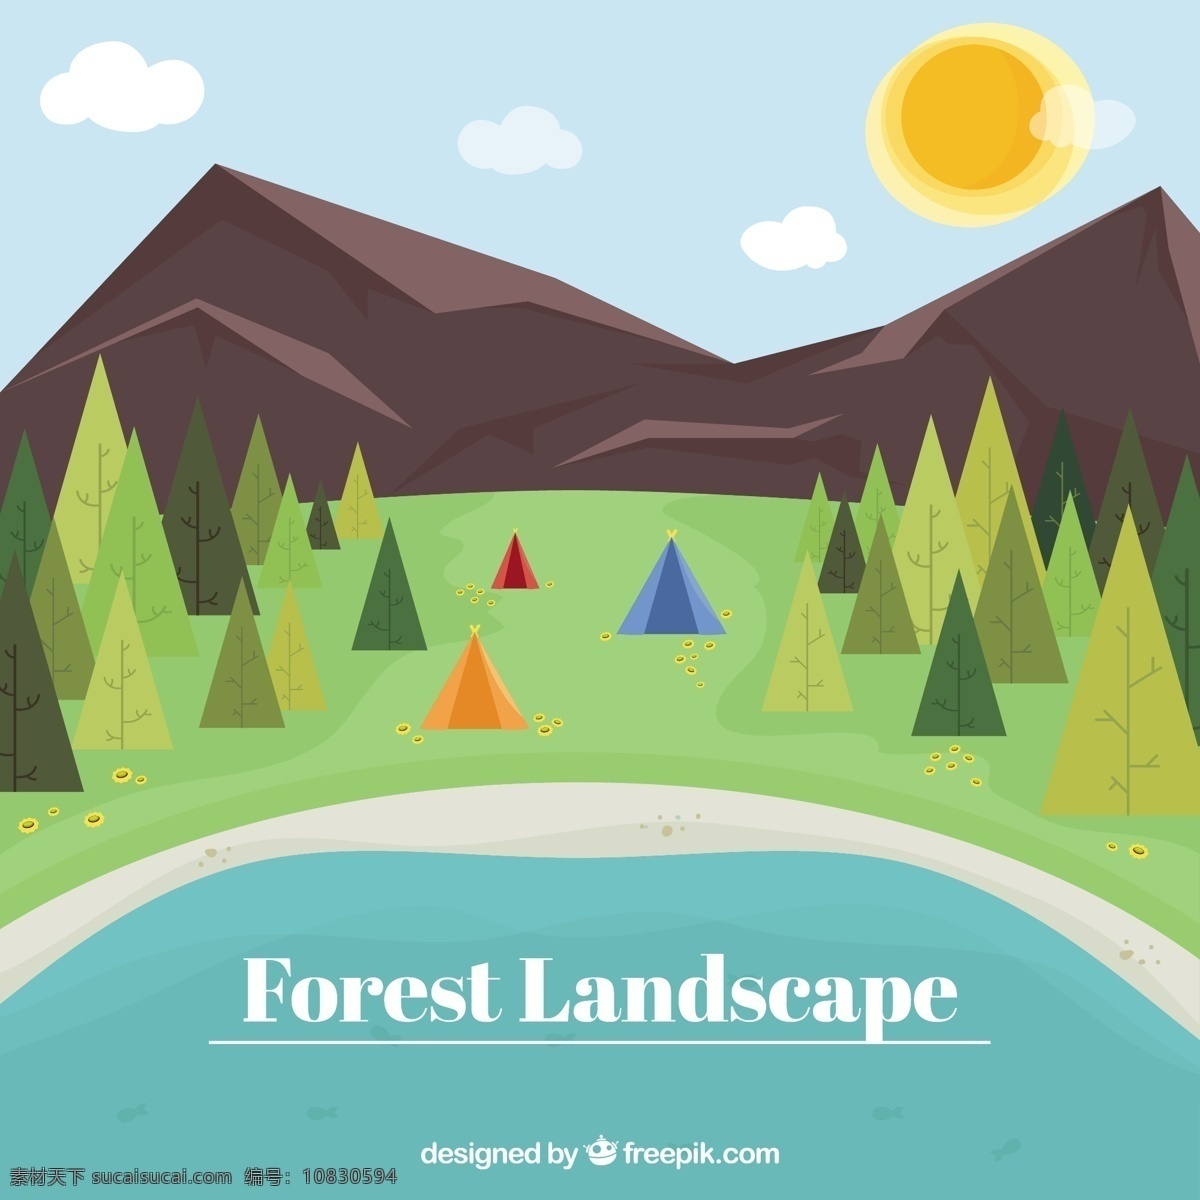 平坦 森林 景观 背景 树 太阳 自然 山 绿 叶 春 树叶 树木 露营 环境 帐篷 湖 松 青色 天蓝色